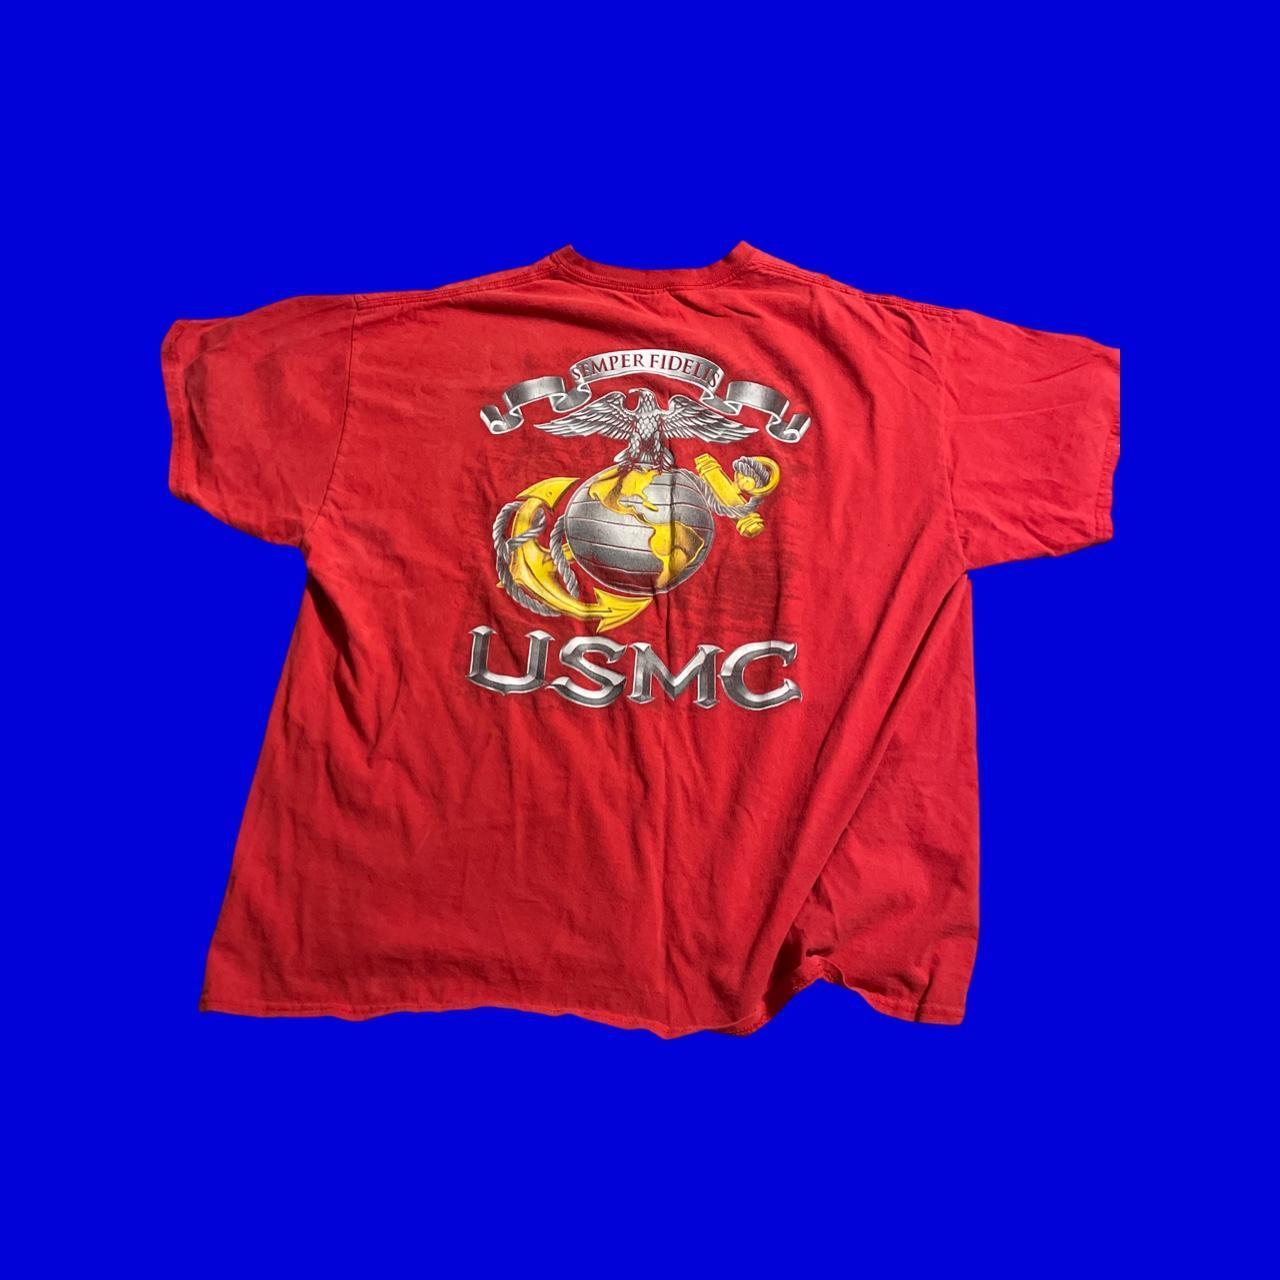 Vintage United States Marine Corps Tee TAGGED XXL... - Depop